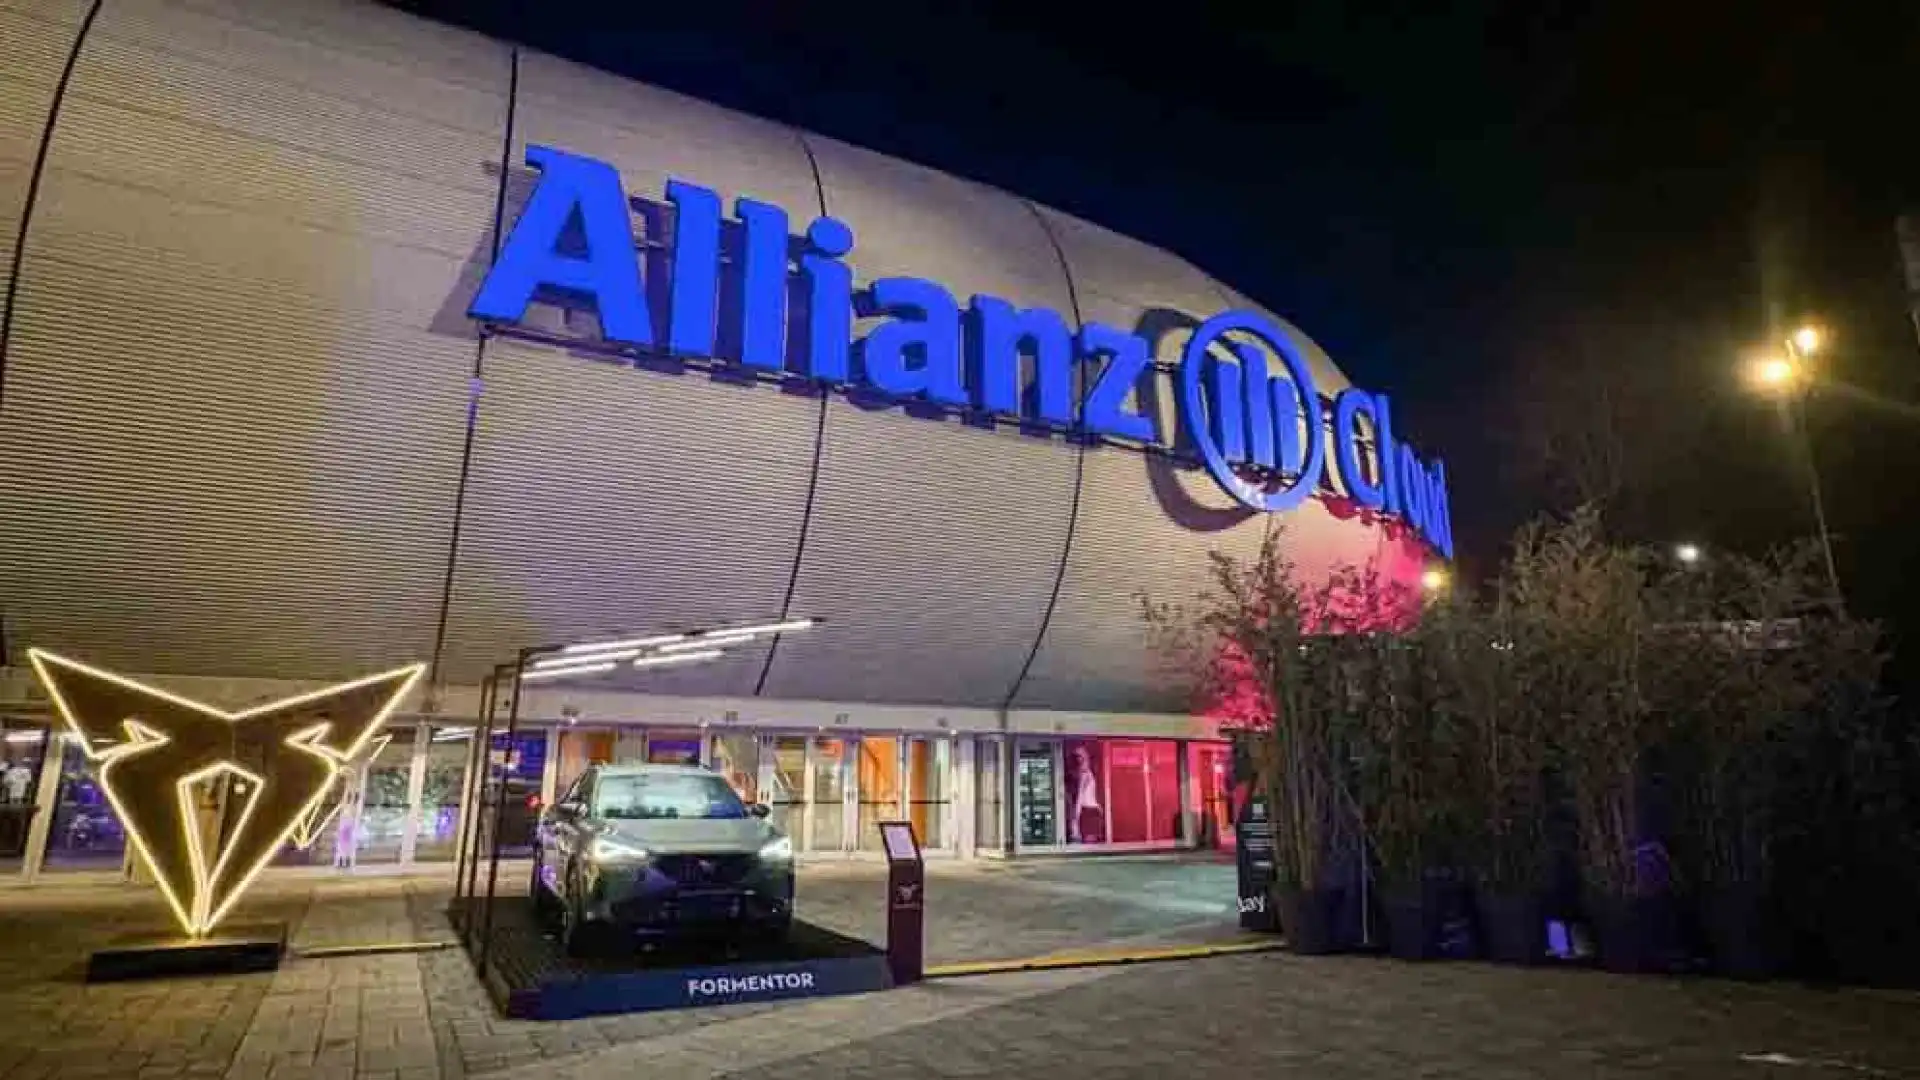 Allianz Cloud per dieci giorni dedicato tutto allo sport del momento.